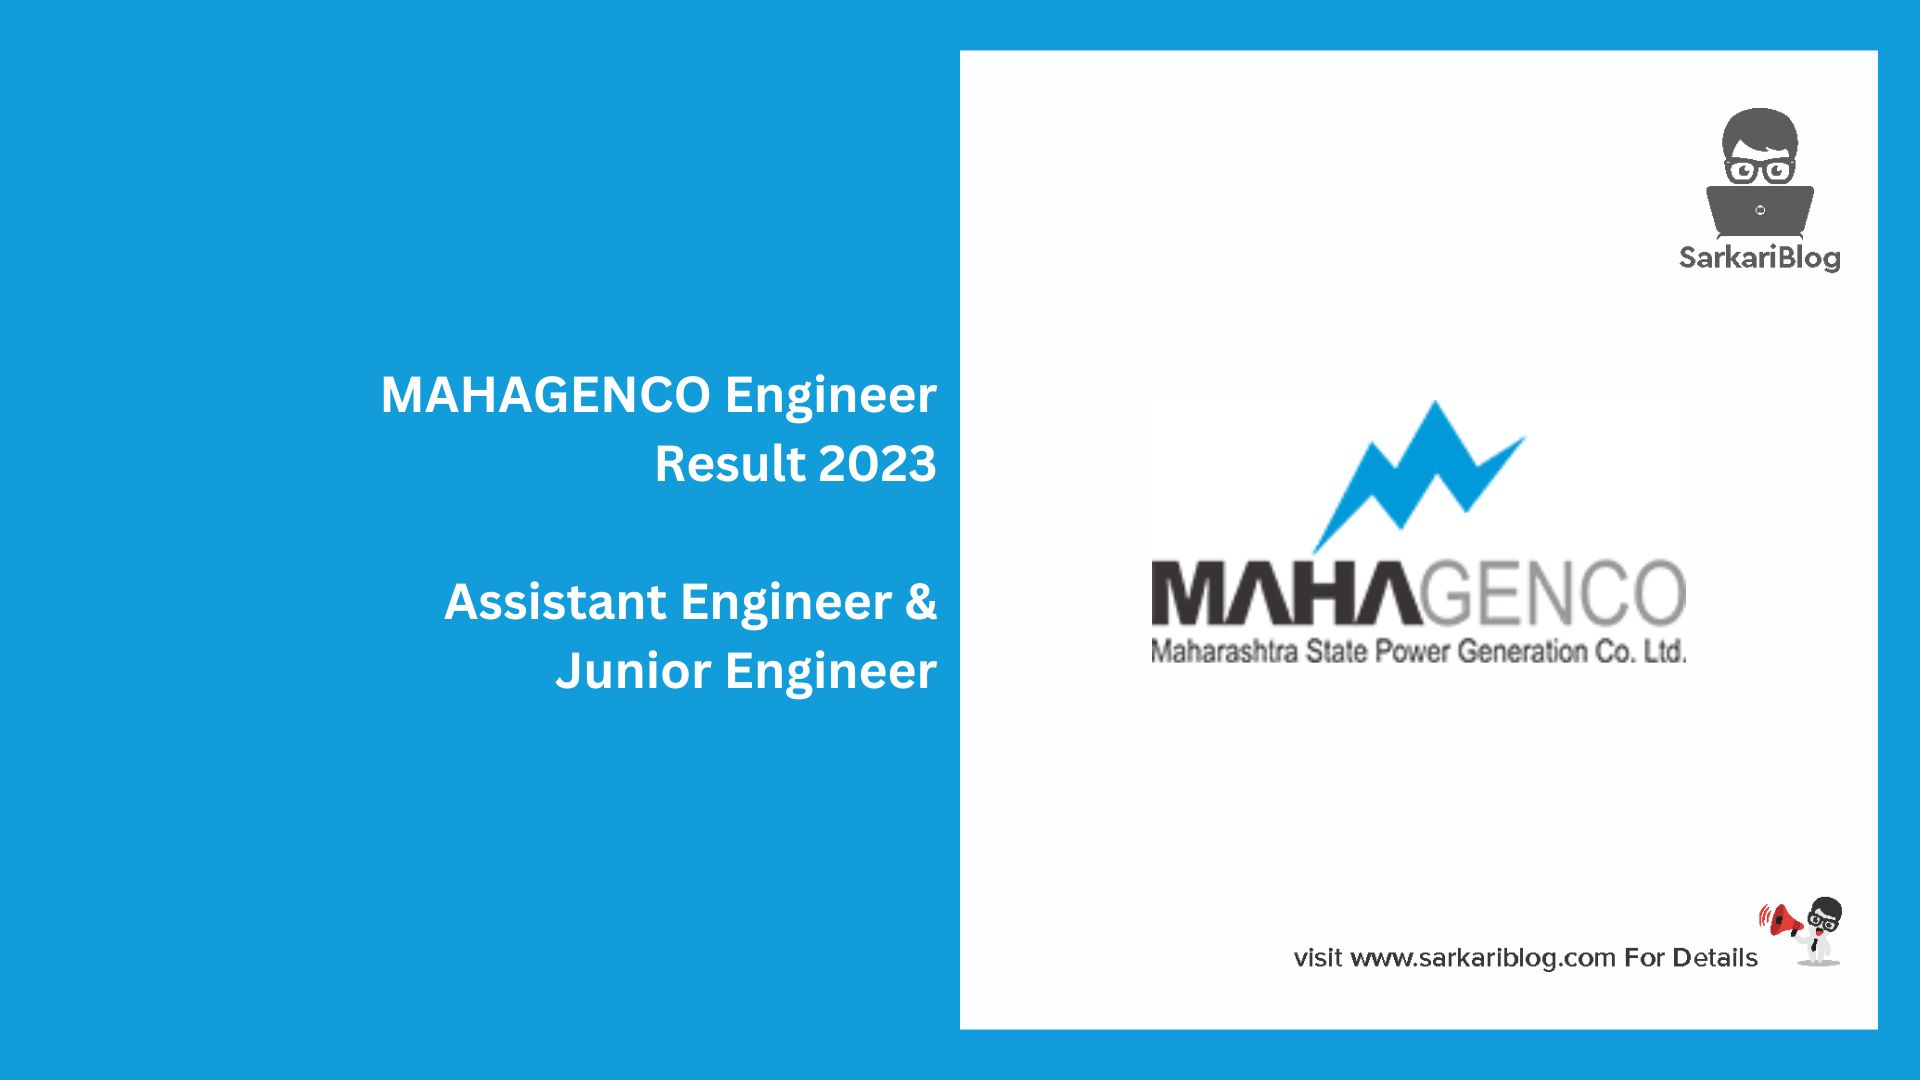 MAHAGENCO Engineer Result 2023